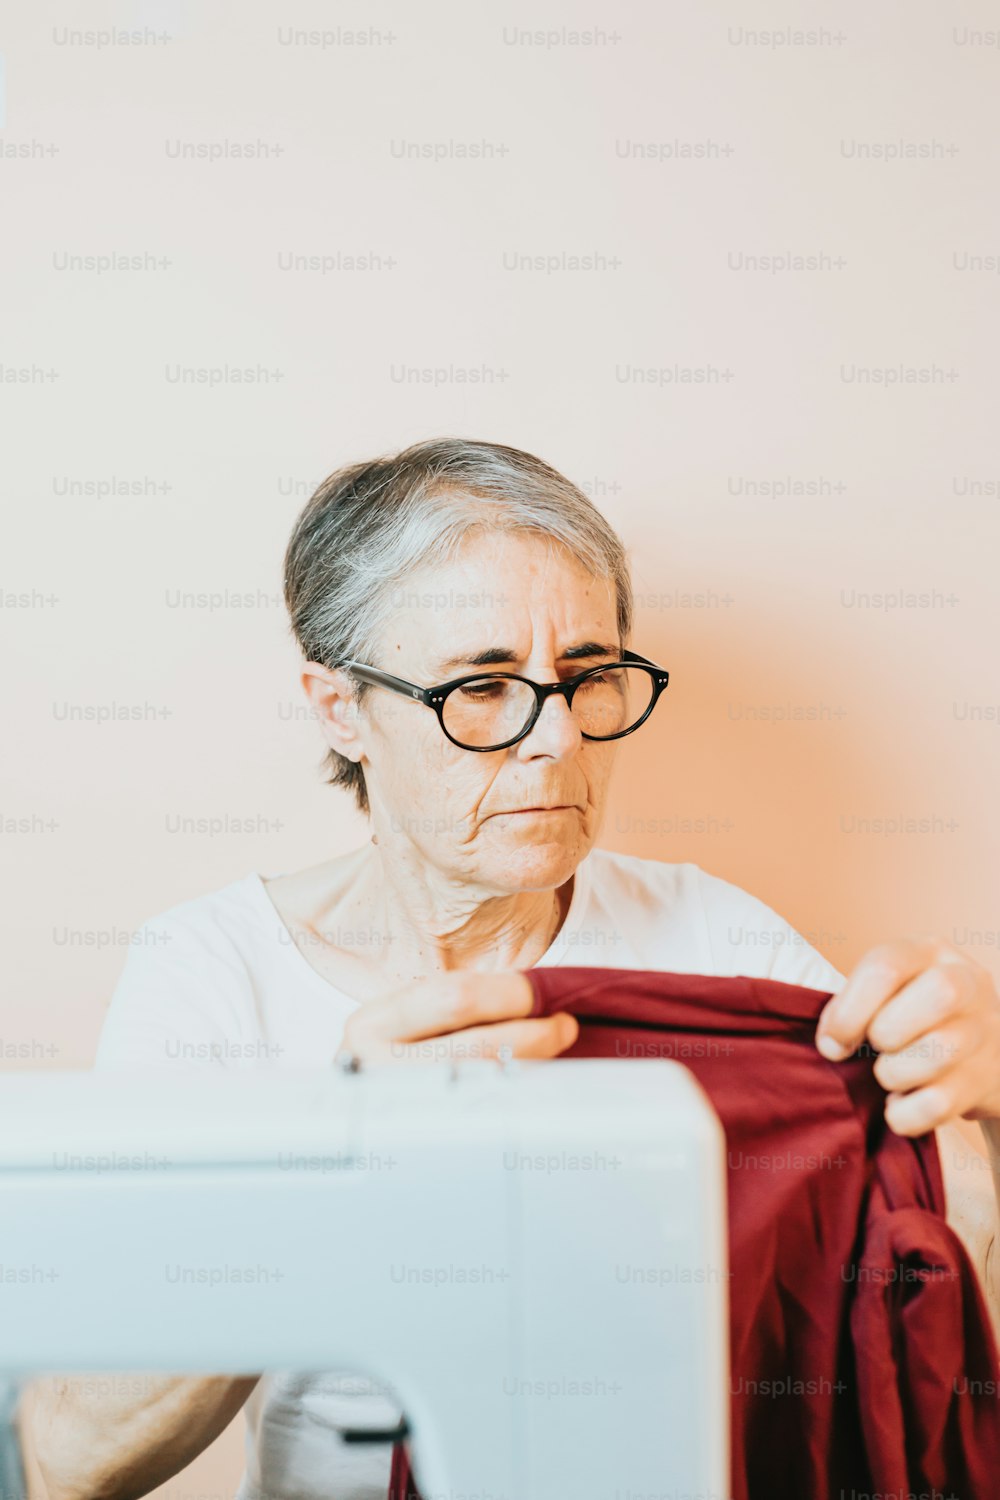 나이 든 여자가 재봉틀로 바느질을 하고 있다